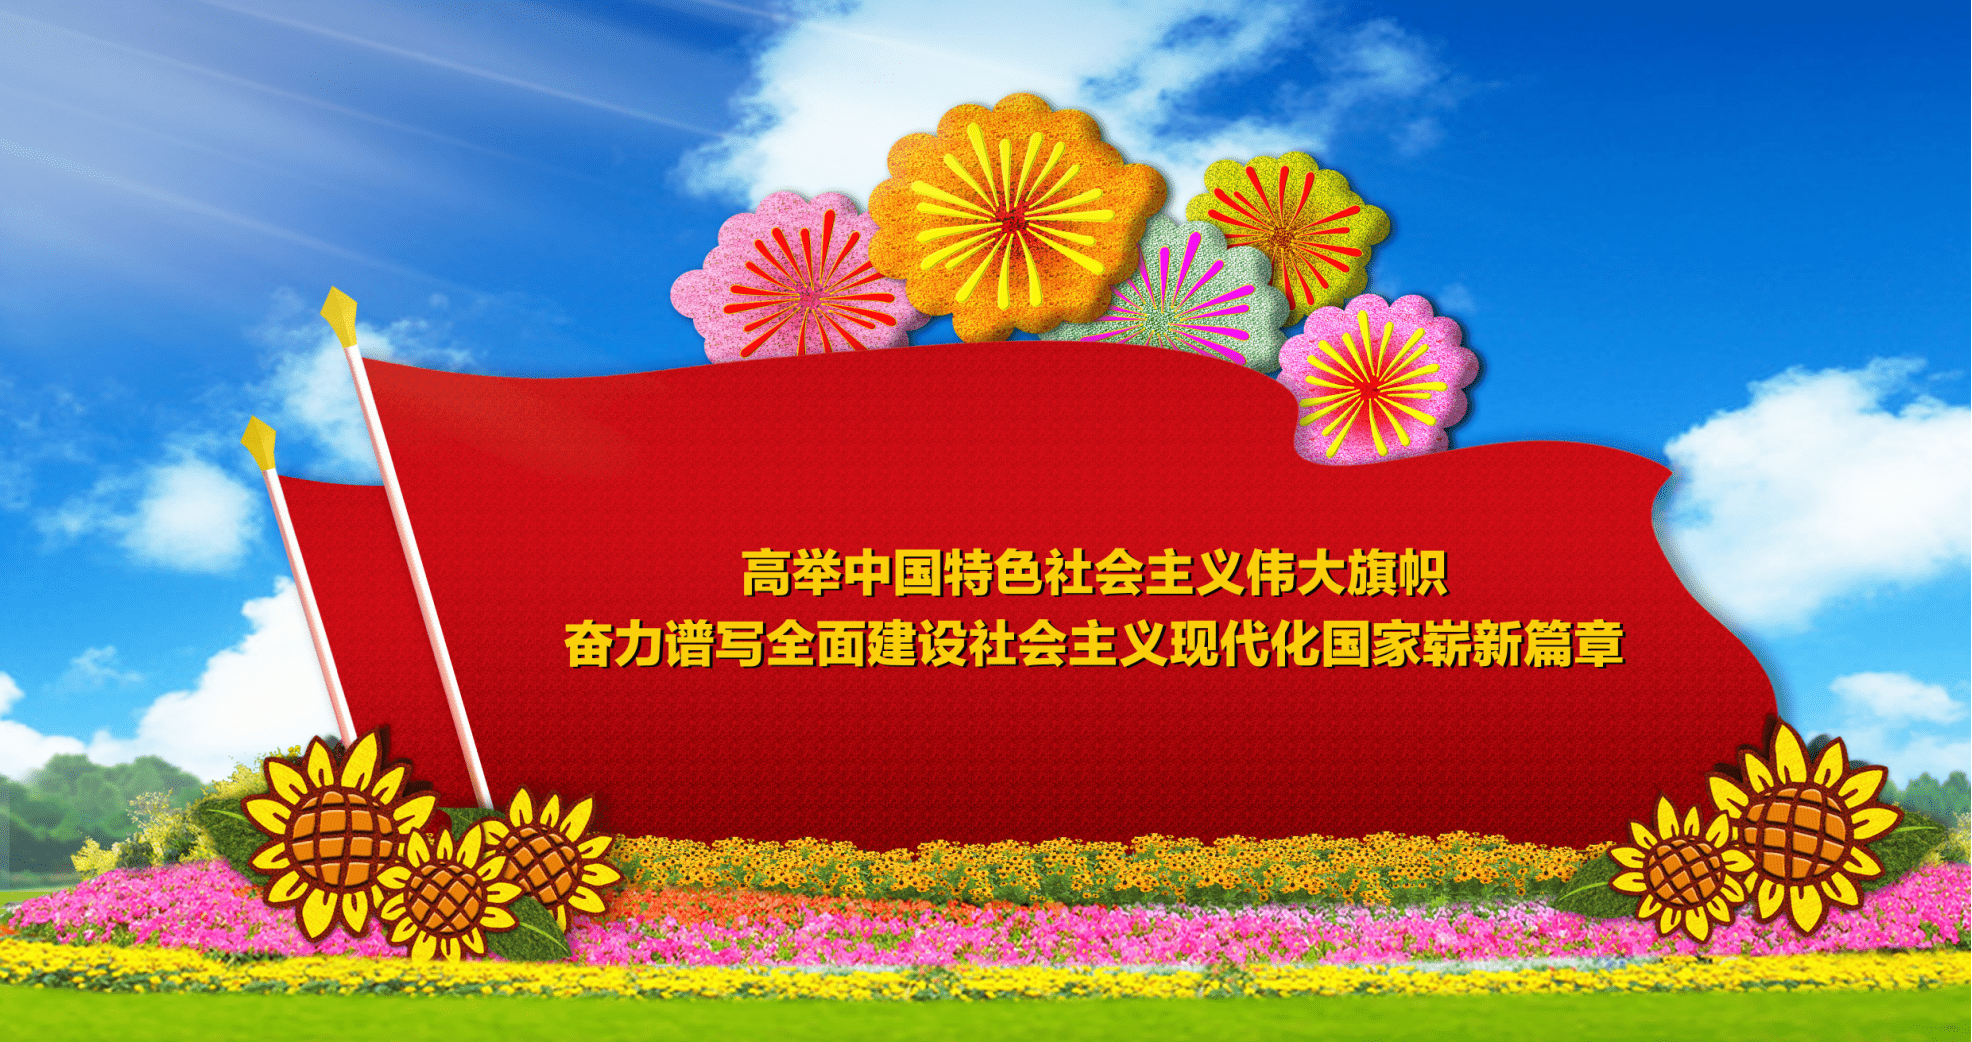 2022年国庆广场花卉KK体育布置方案公布！效果图抢先看(图5)